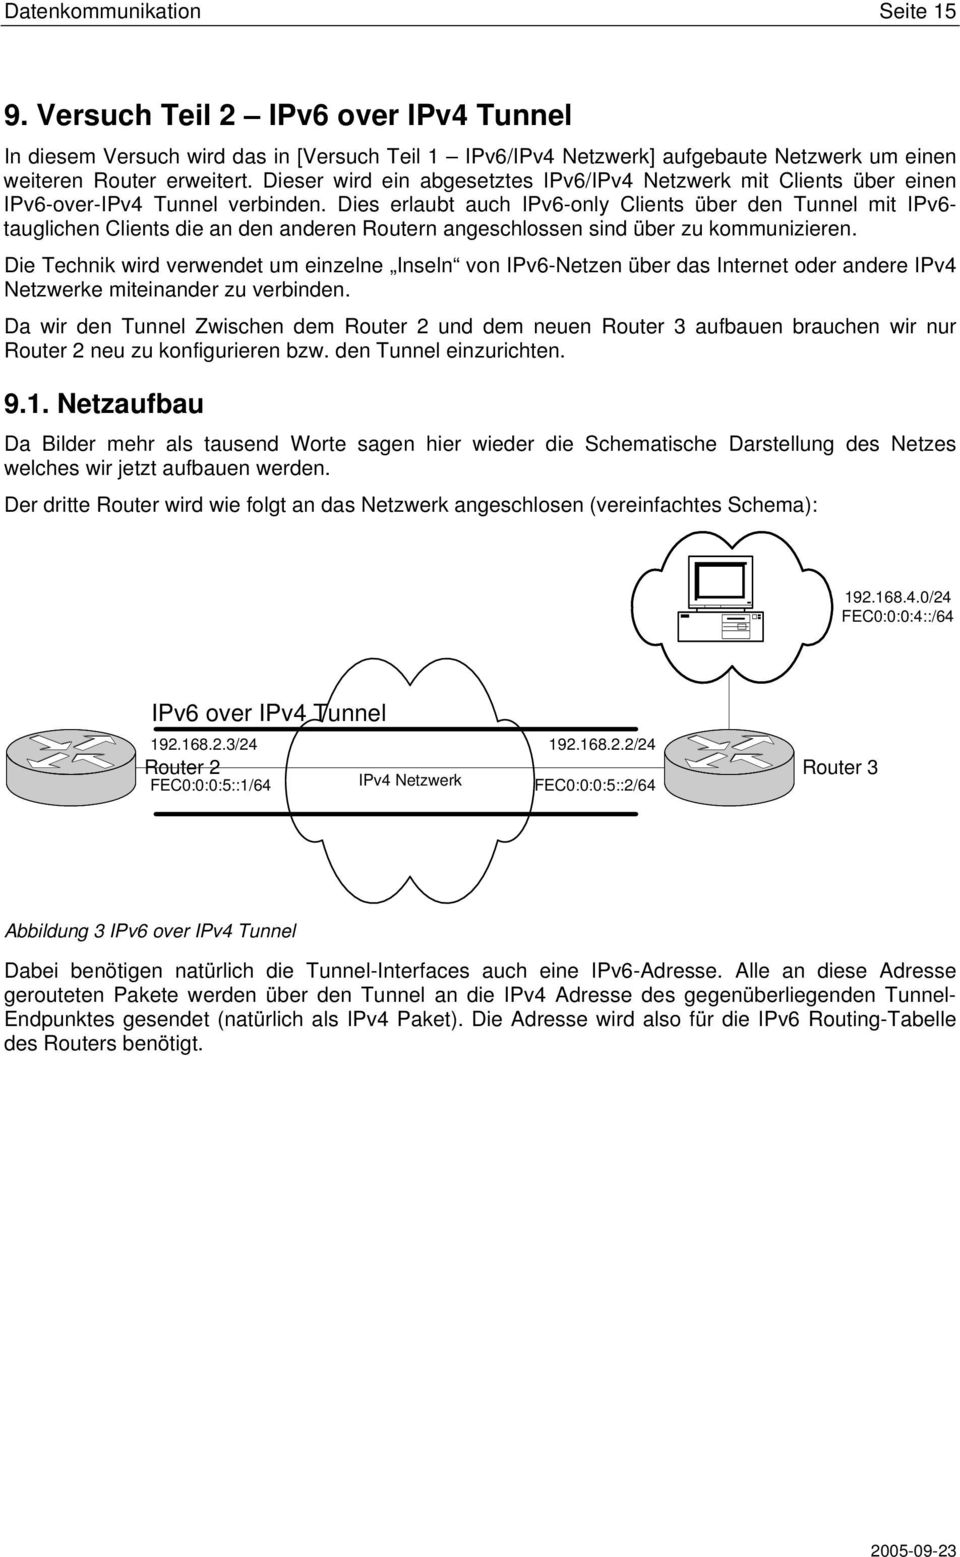 Dies erlaubt auch IPv6-only Clients über den Tunnel mit IPv6- tauglichen Clients die an den anderen Routern angeschlossen sind über zu kommunizieren.